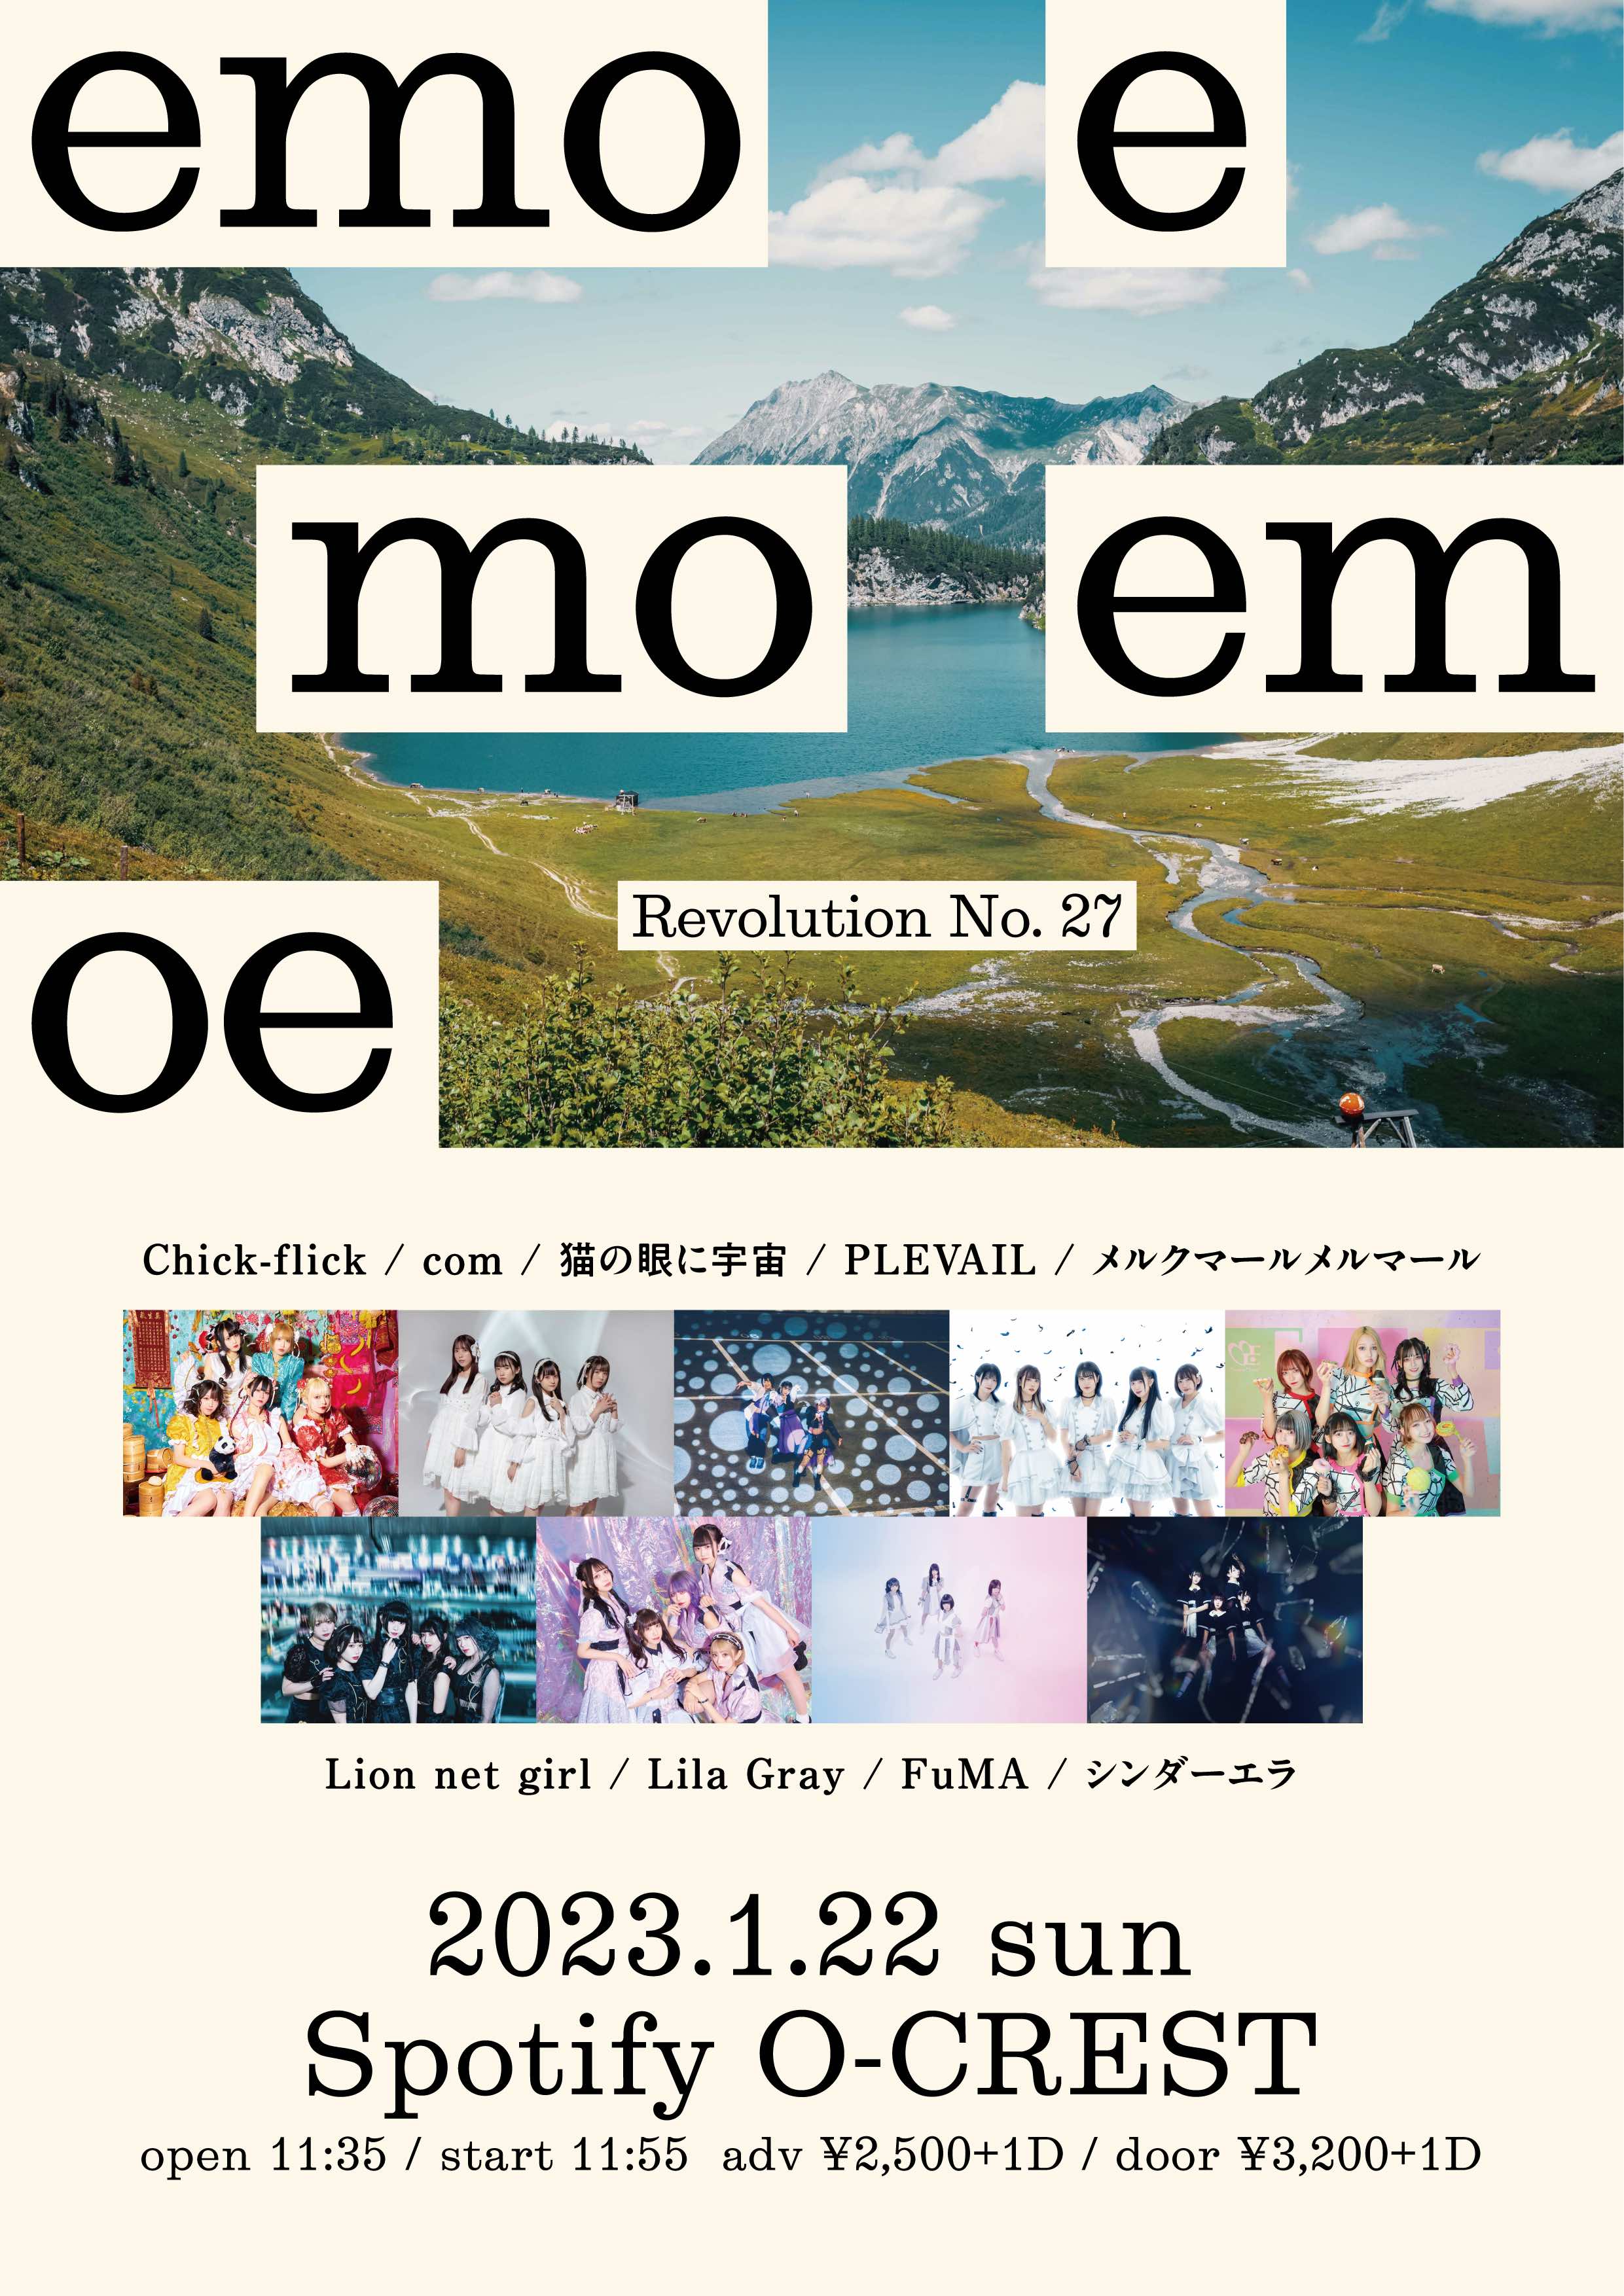 『emoemoemoe』 Revolution No. 27